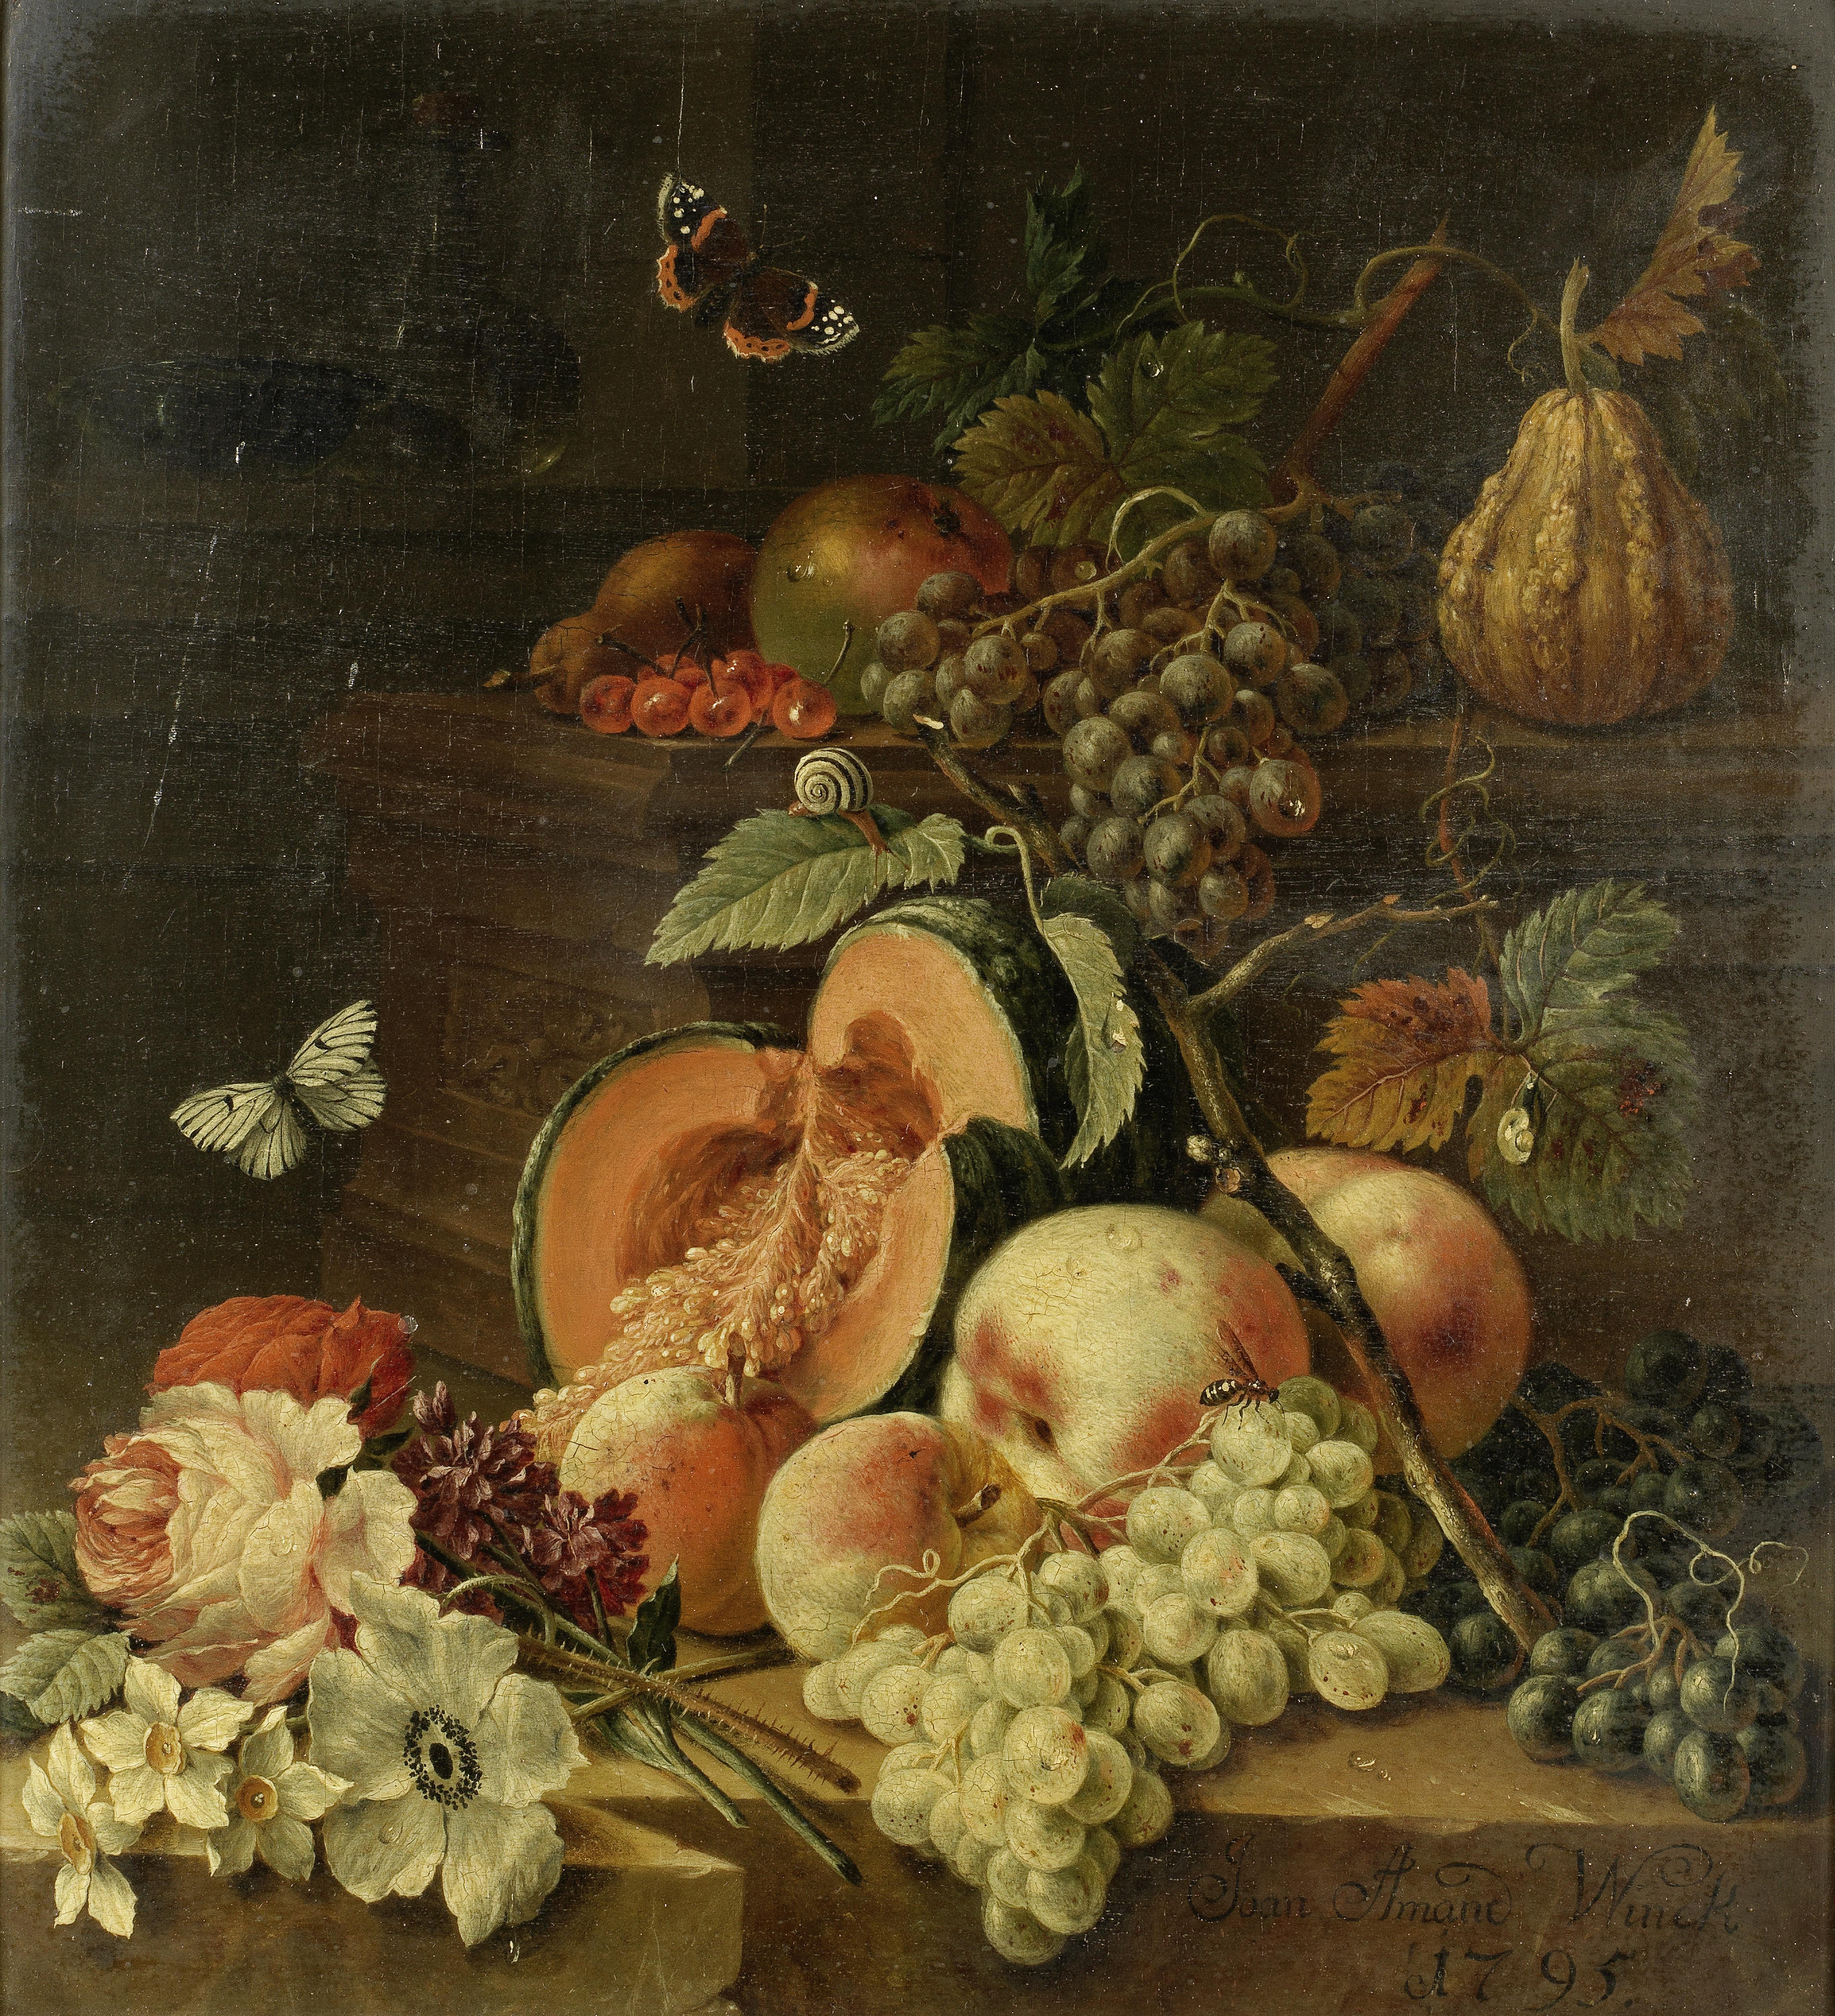 Johann Amandus Winck - Eine geteilte Melone, Pfirsiche, Trauben und verschiedene Blumen auf einem Sims (1795)